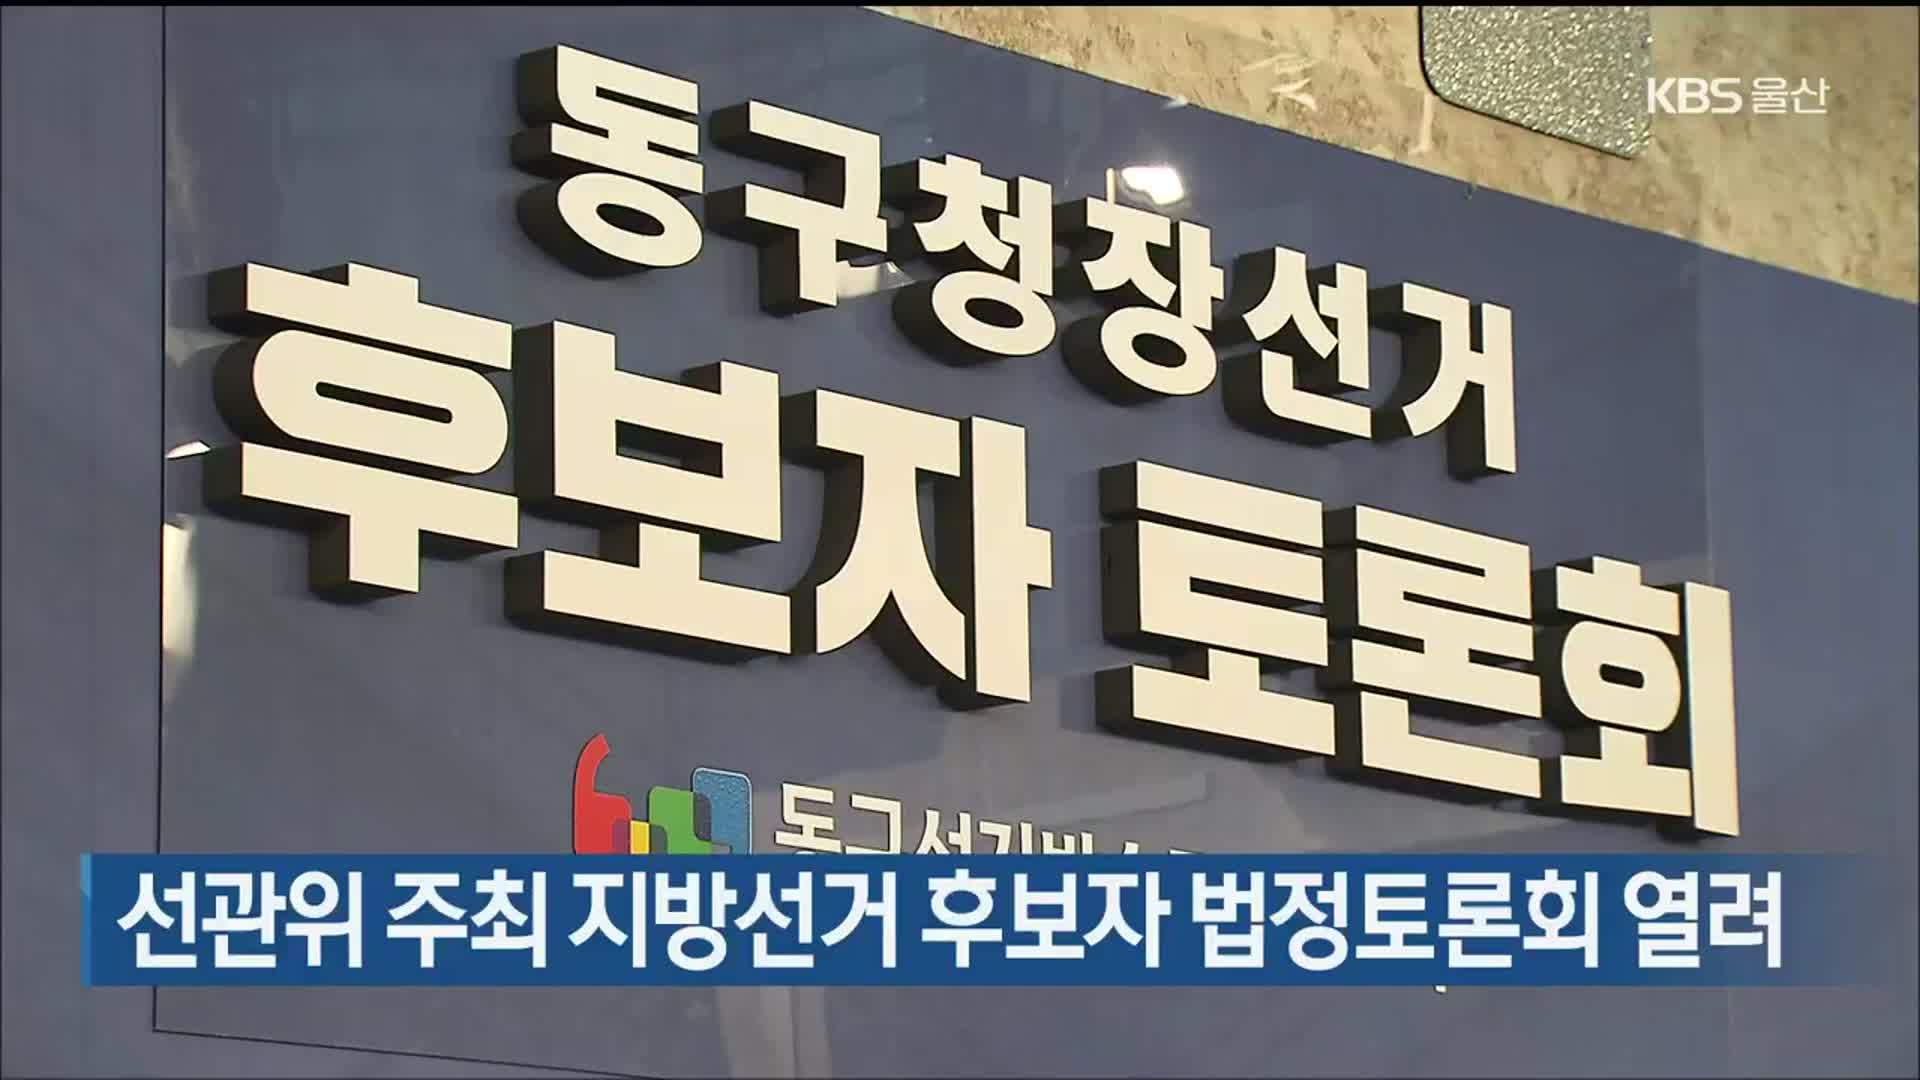 선관위 주최 지방선거 후보자 법정토론회 열려